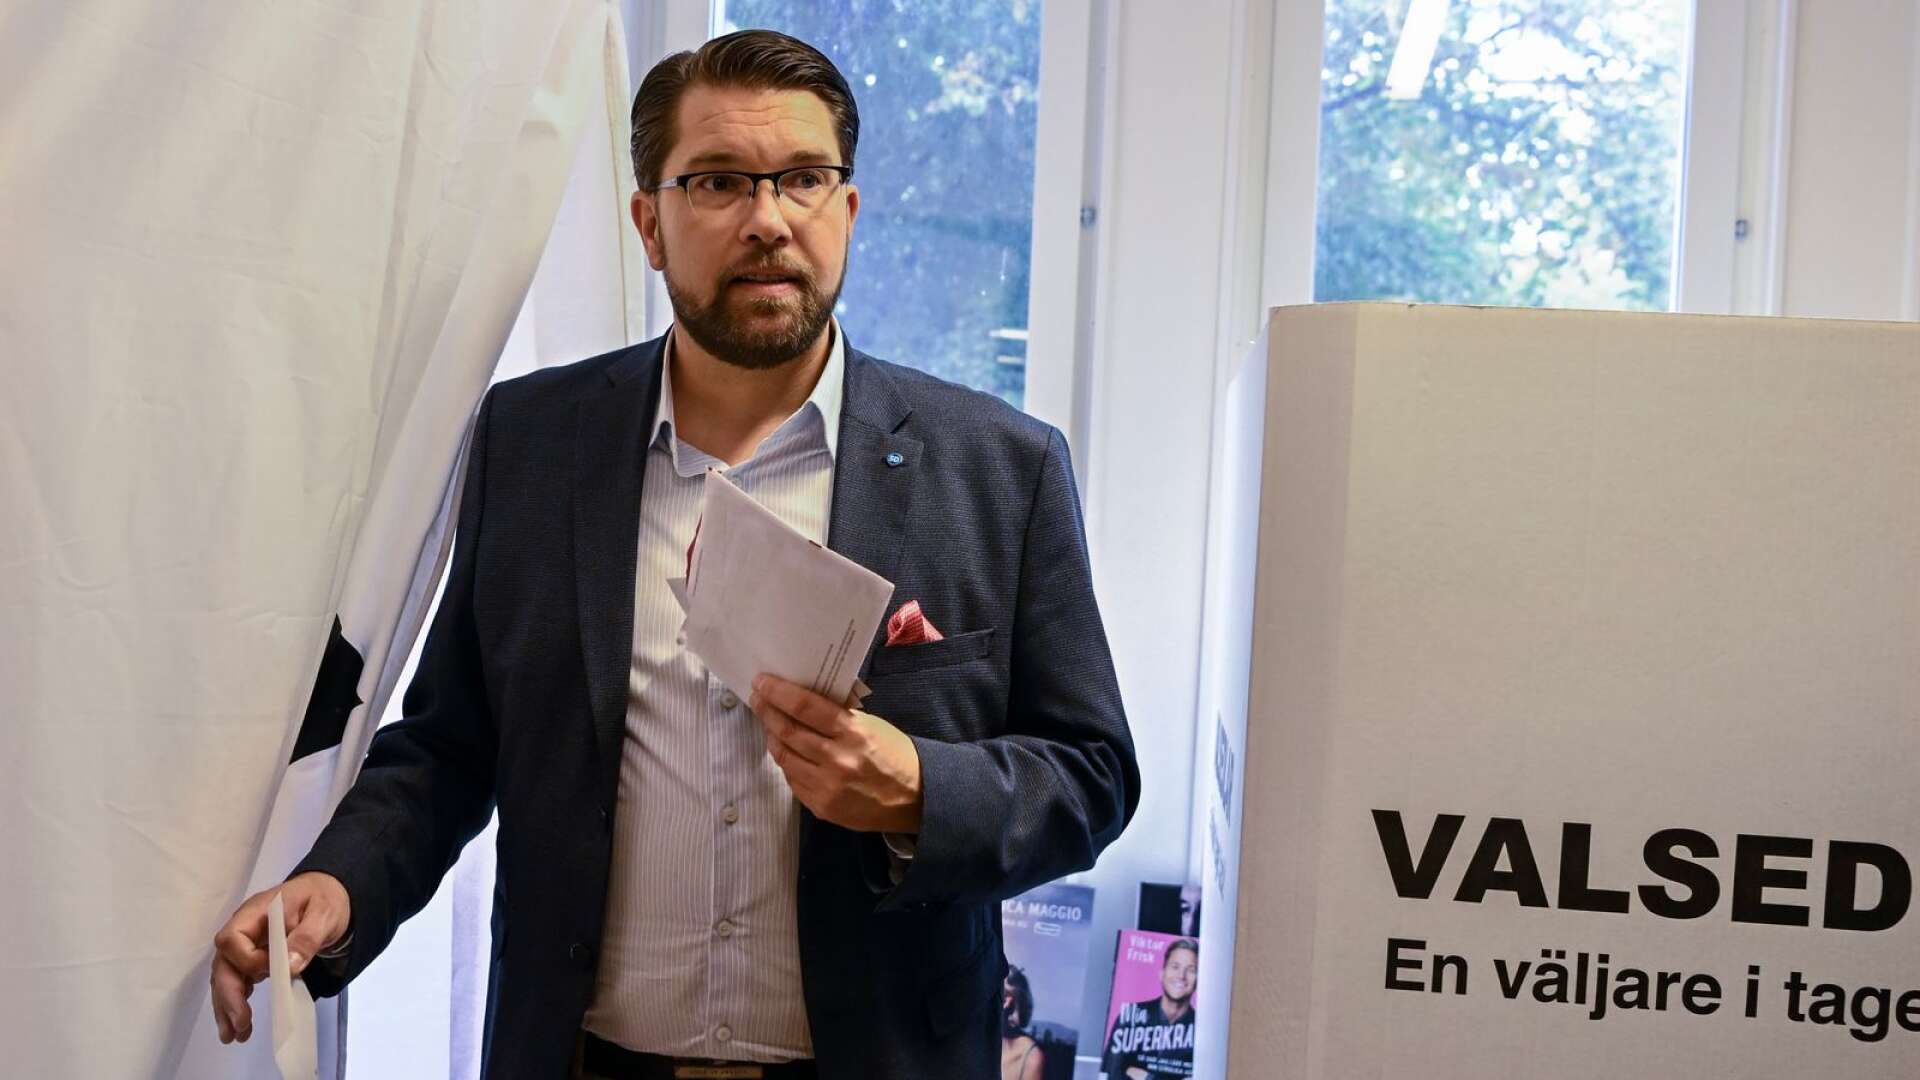 De röstningsbeslut som föregår valet av dessa partier anses vara helt igenom rationella medan röstningsbeslut som föregår valet av Sverigedemokraterna förutsätts vara halvintelligenta, skriver Stefan Olsson.